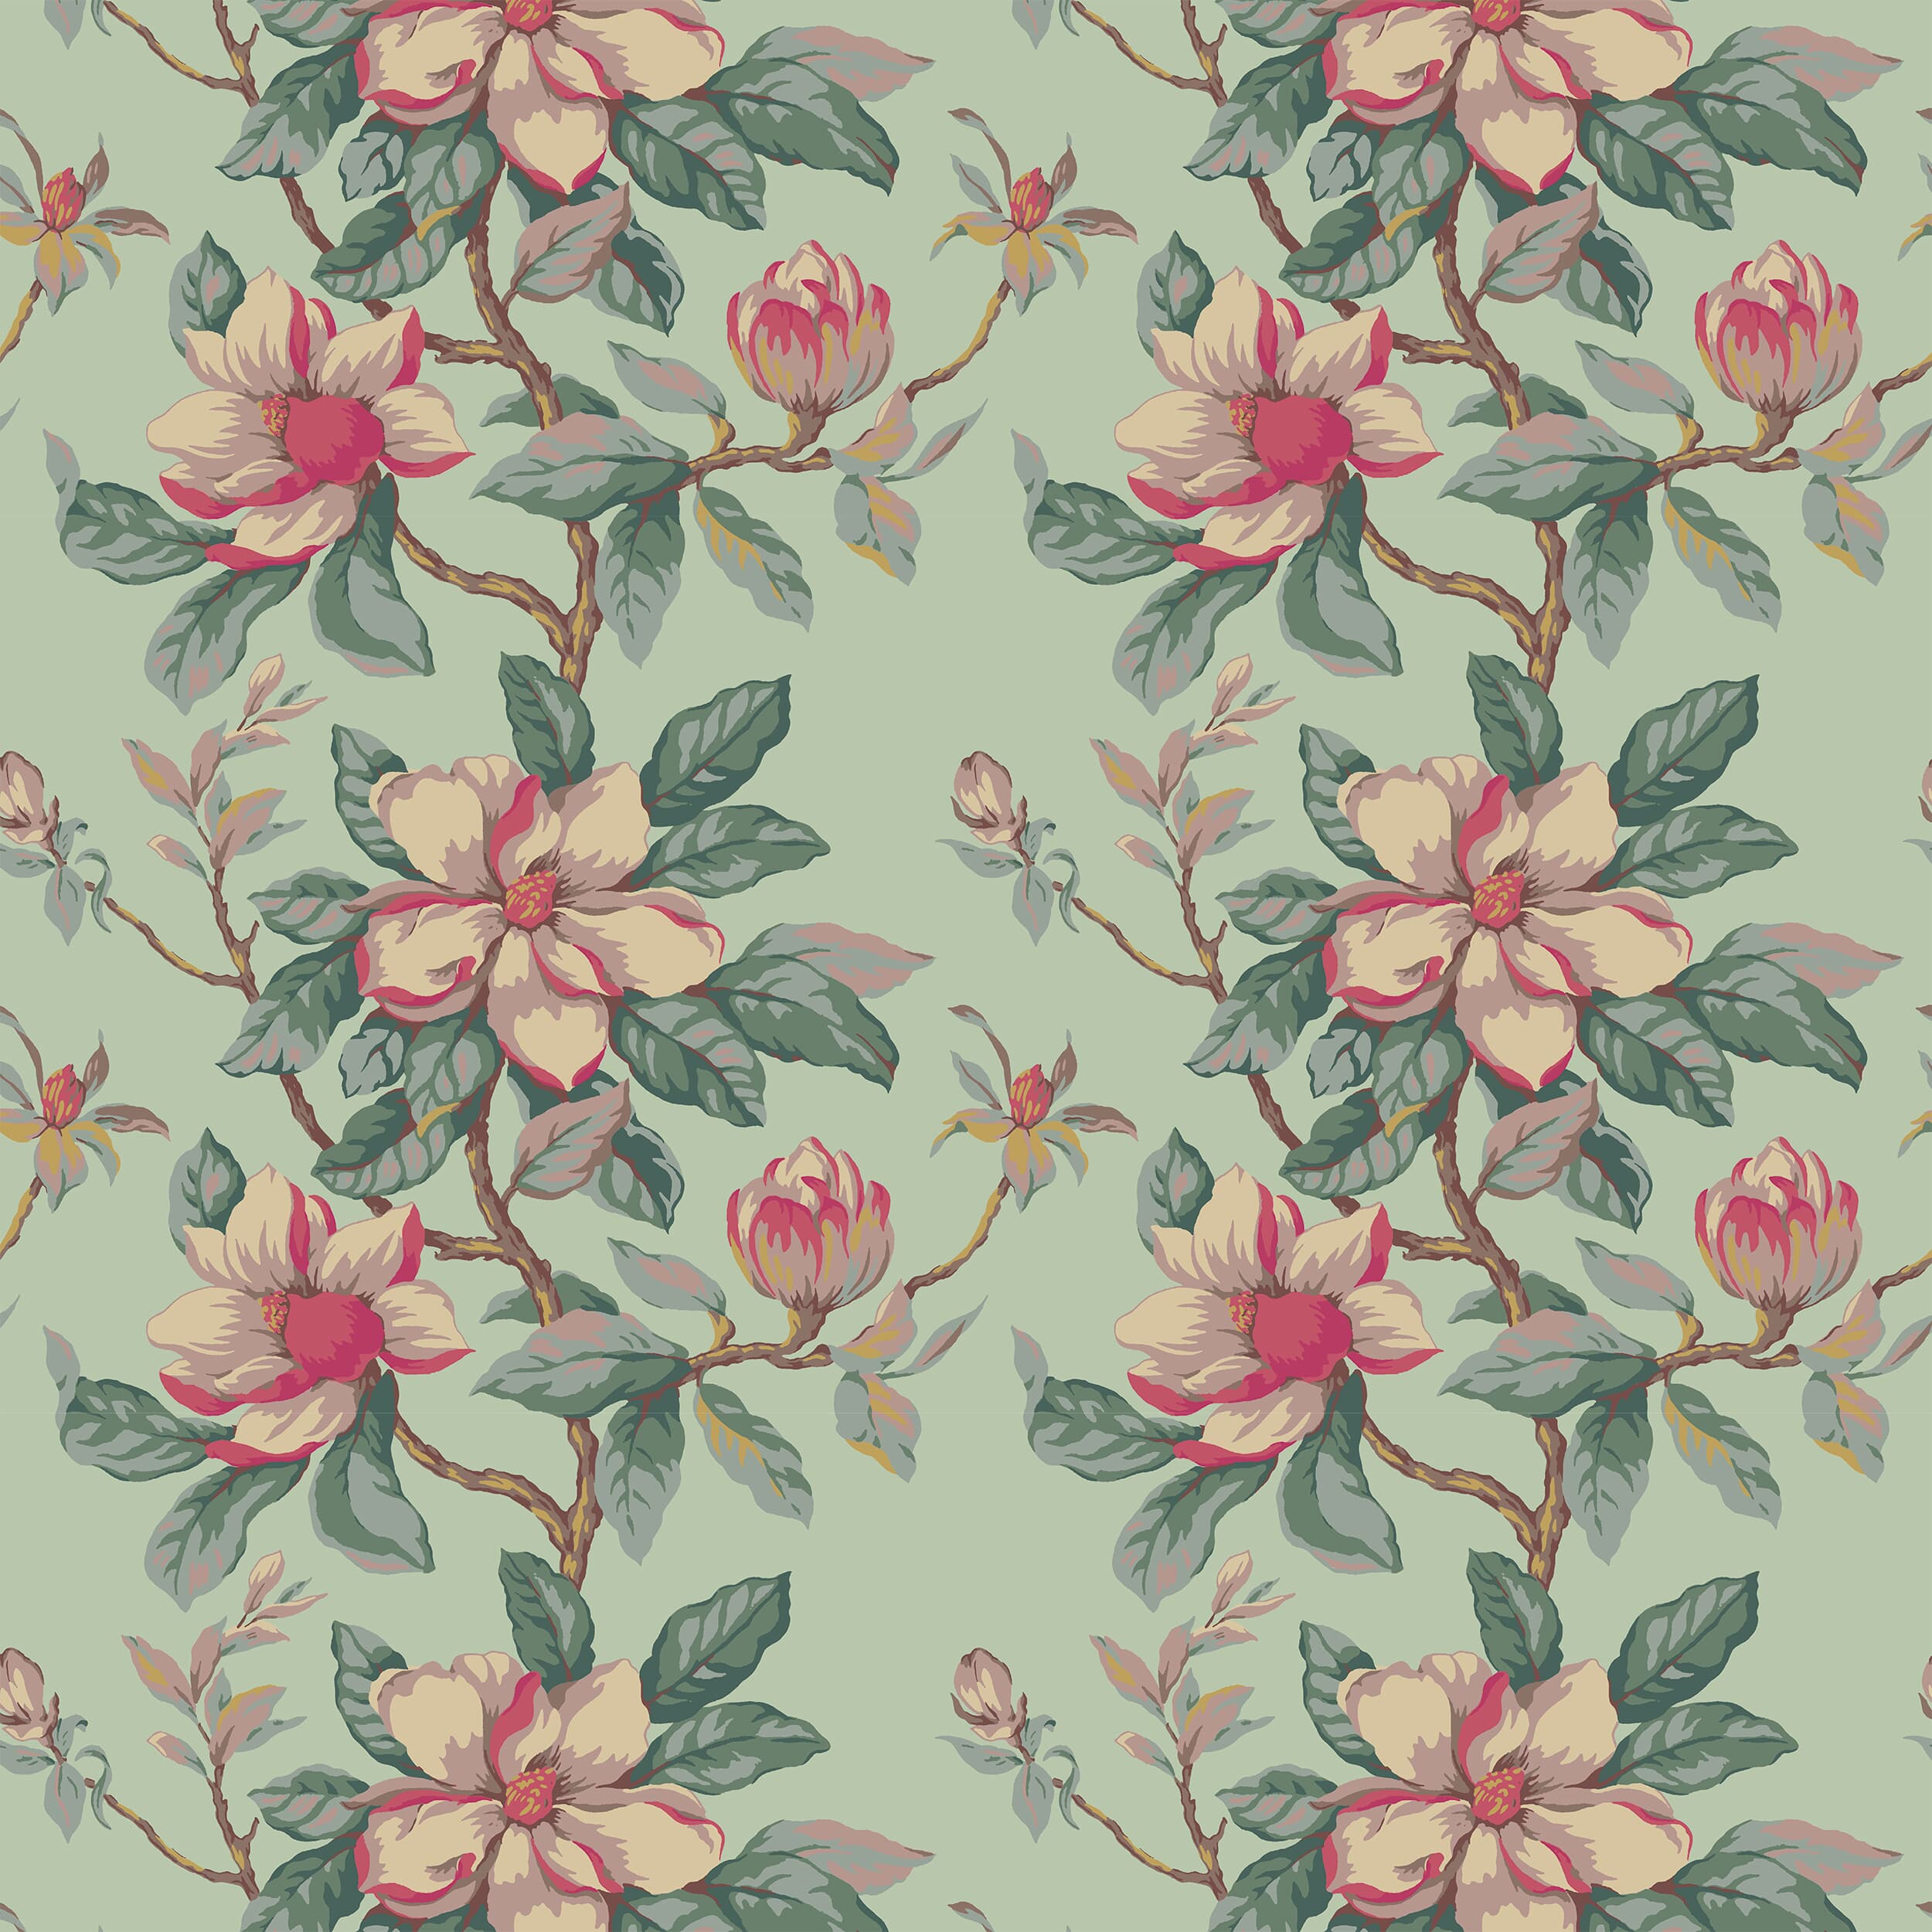 7460-15 Magnolia Grandiflora by Stout Fabric